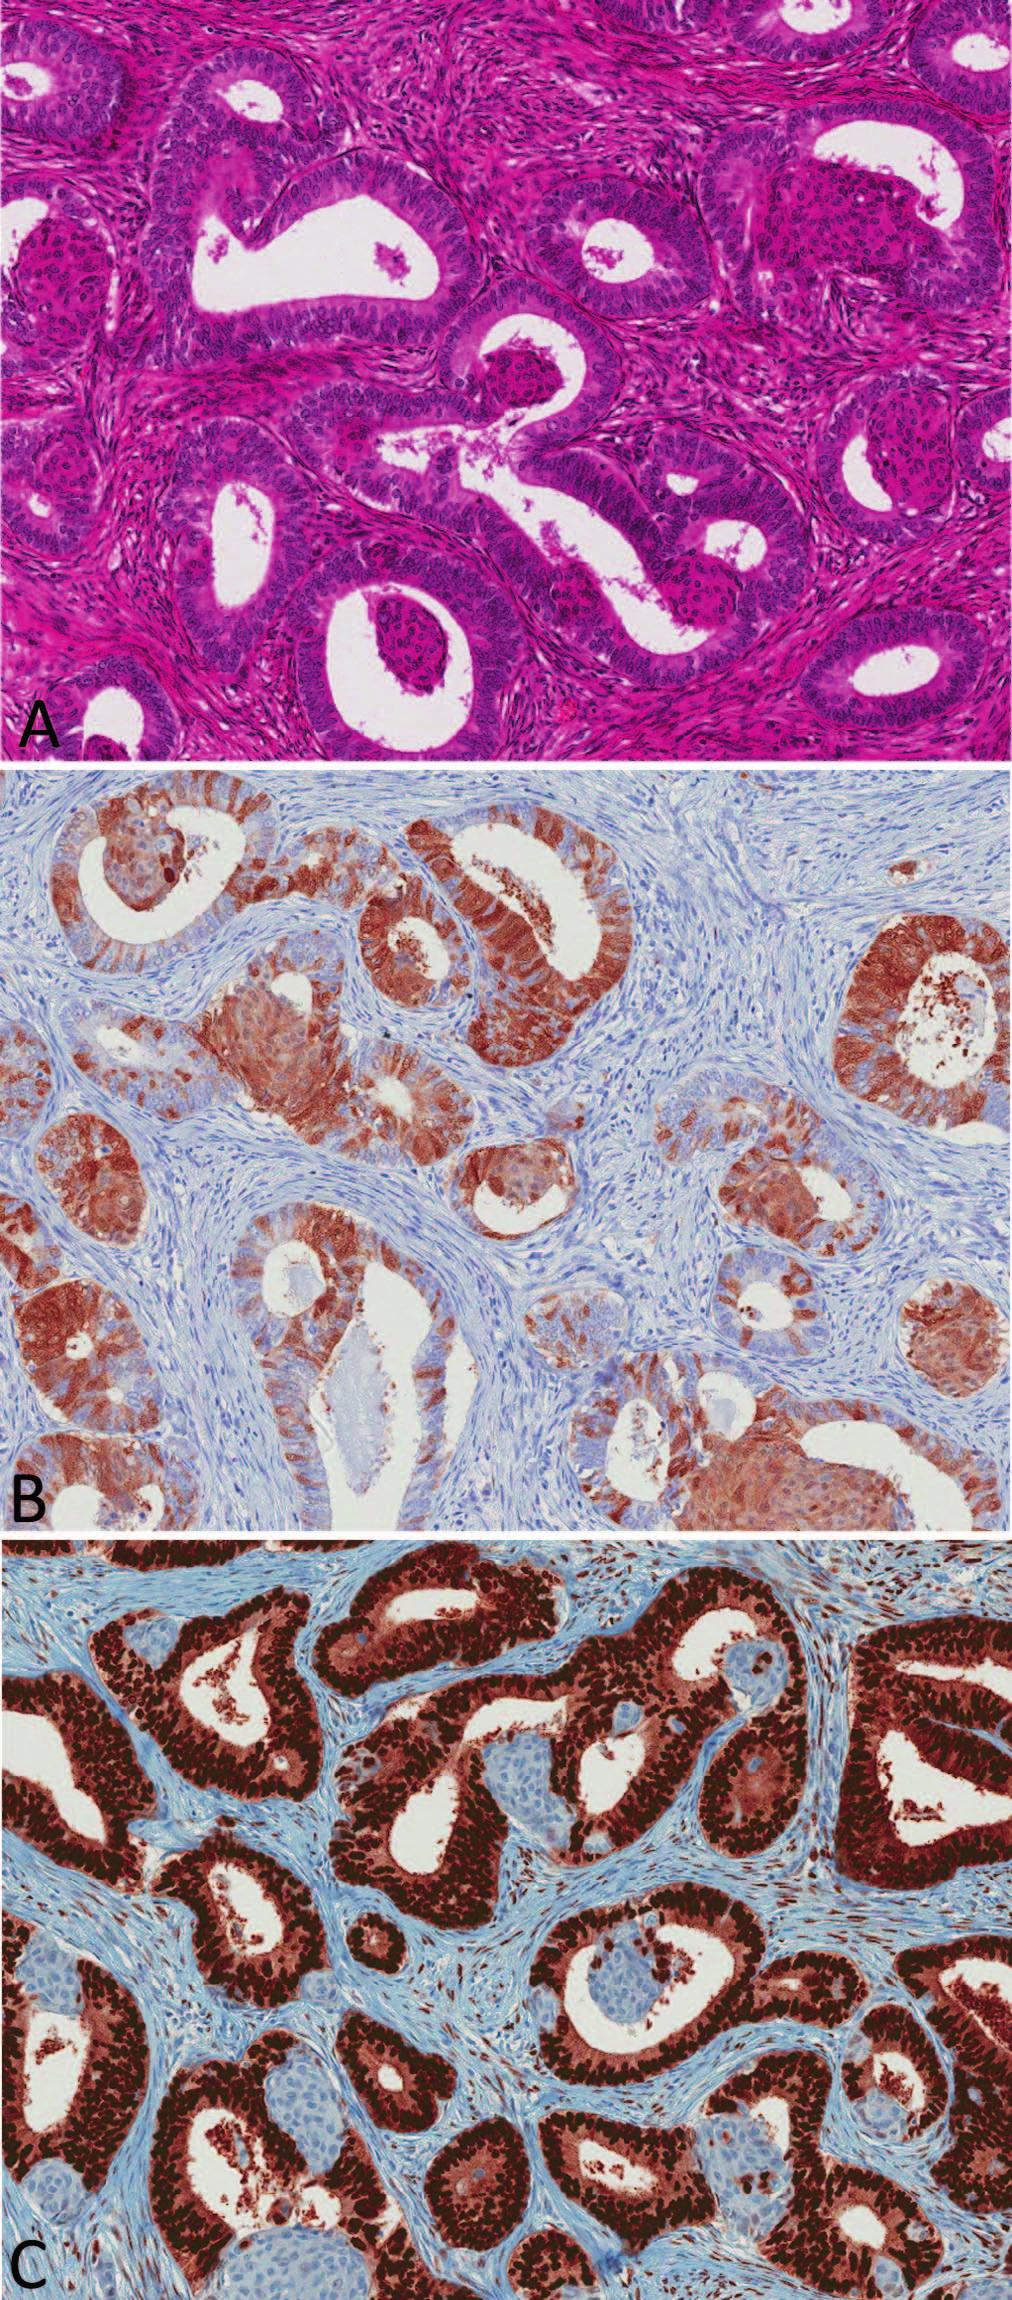 Figure 3. Uterine endometrioid adenocarcinoma. A, Well-differentiated endometrioid adenocarcinoma with squamous morulae.